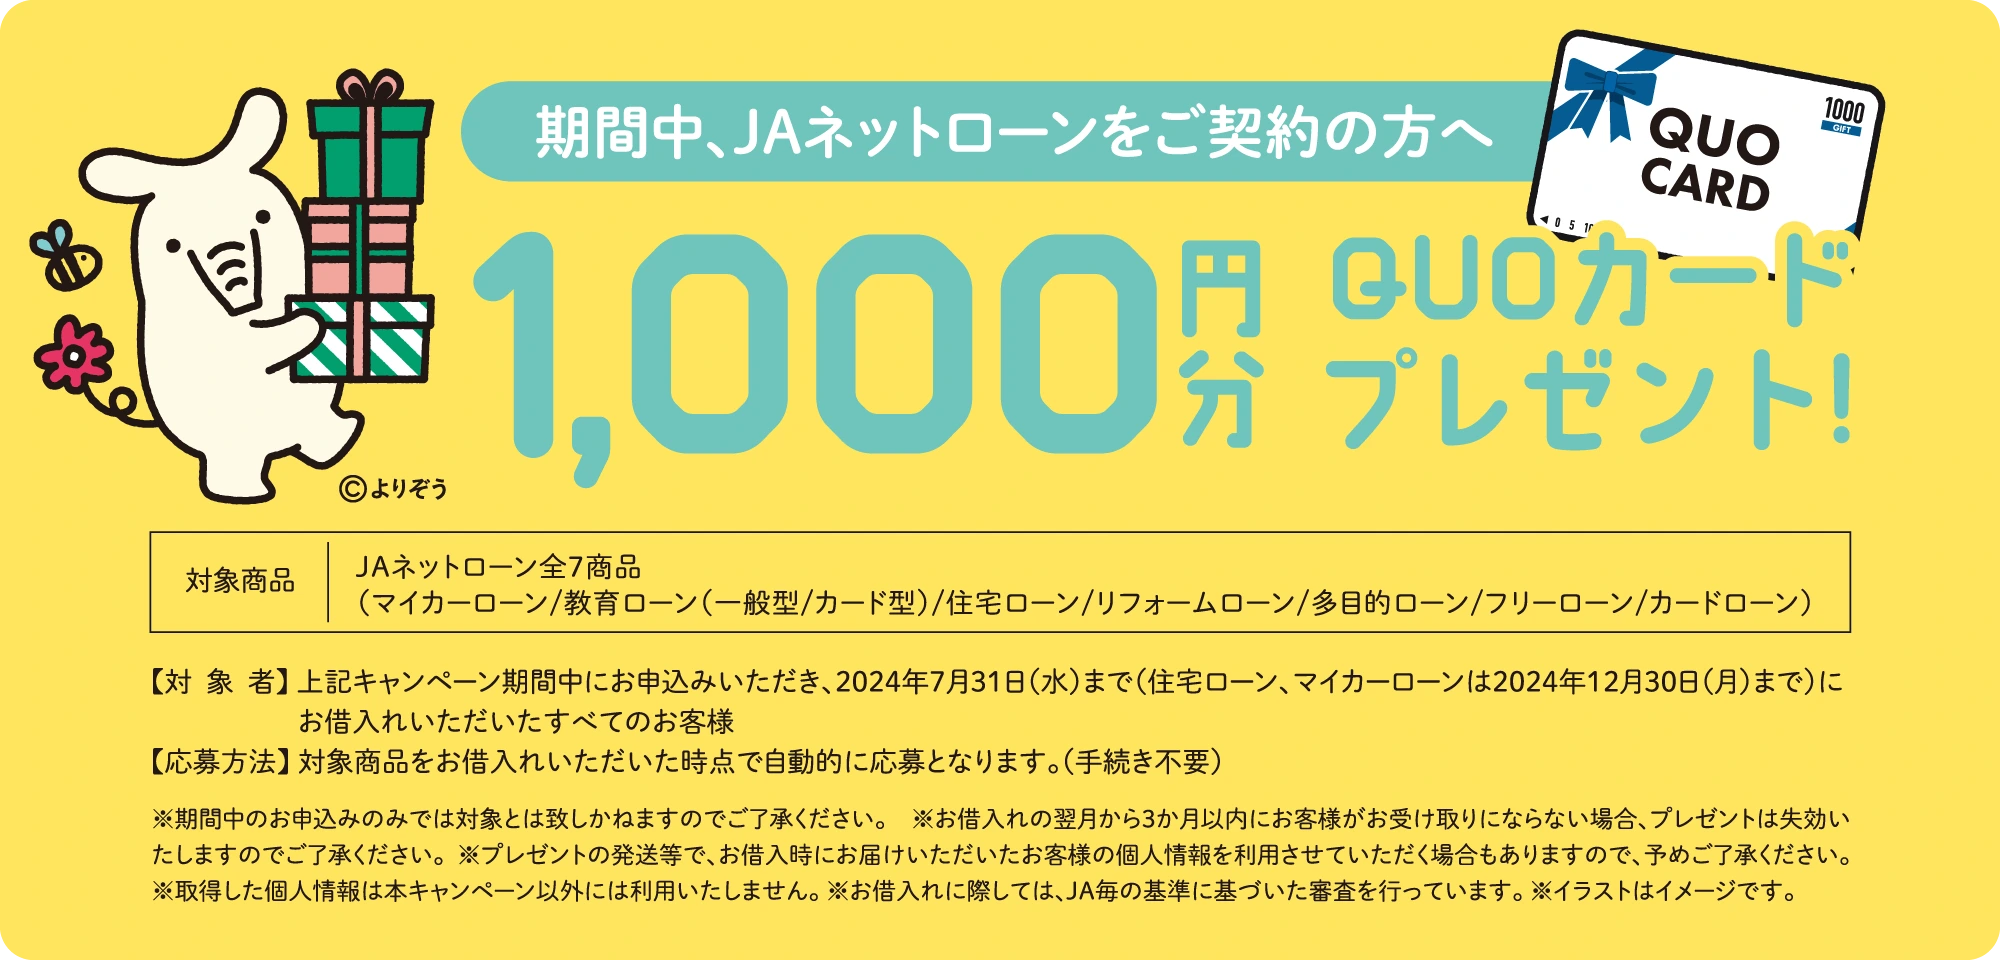 期間中、JAネットローンをご契約の方へQUOカード1,000円分プレゼント！